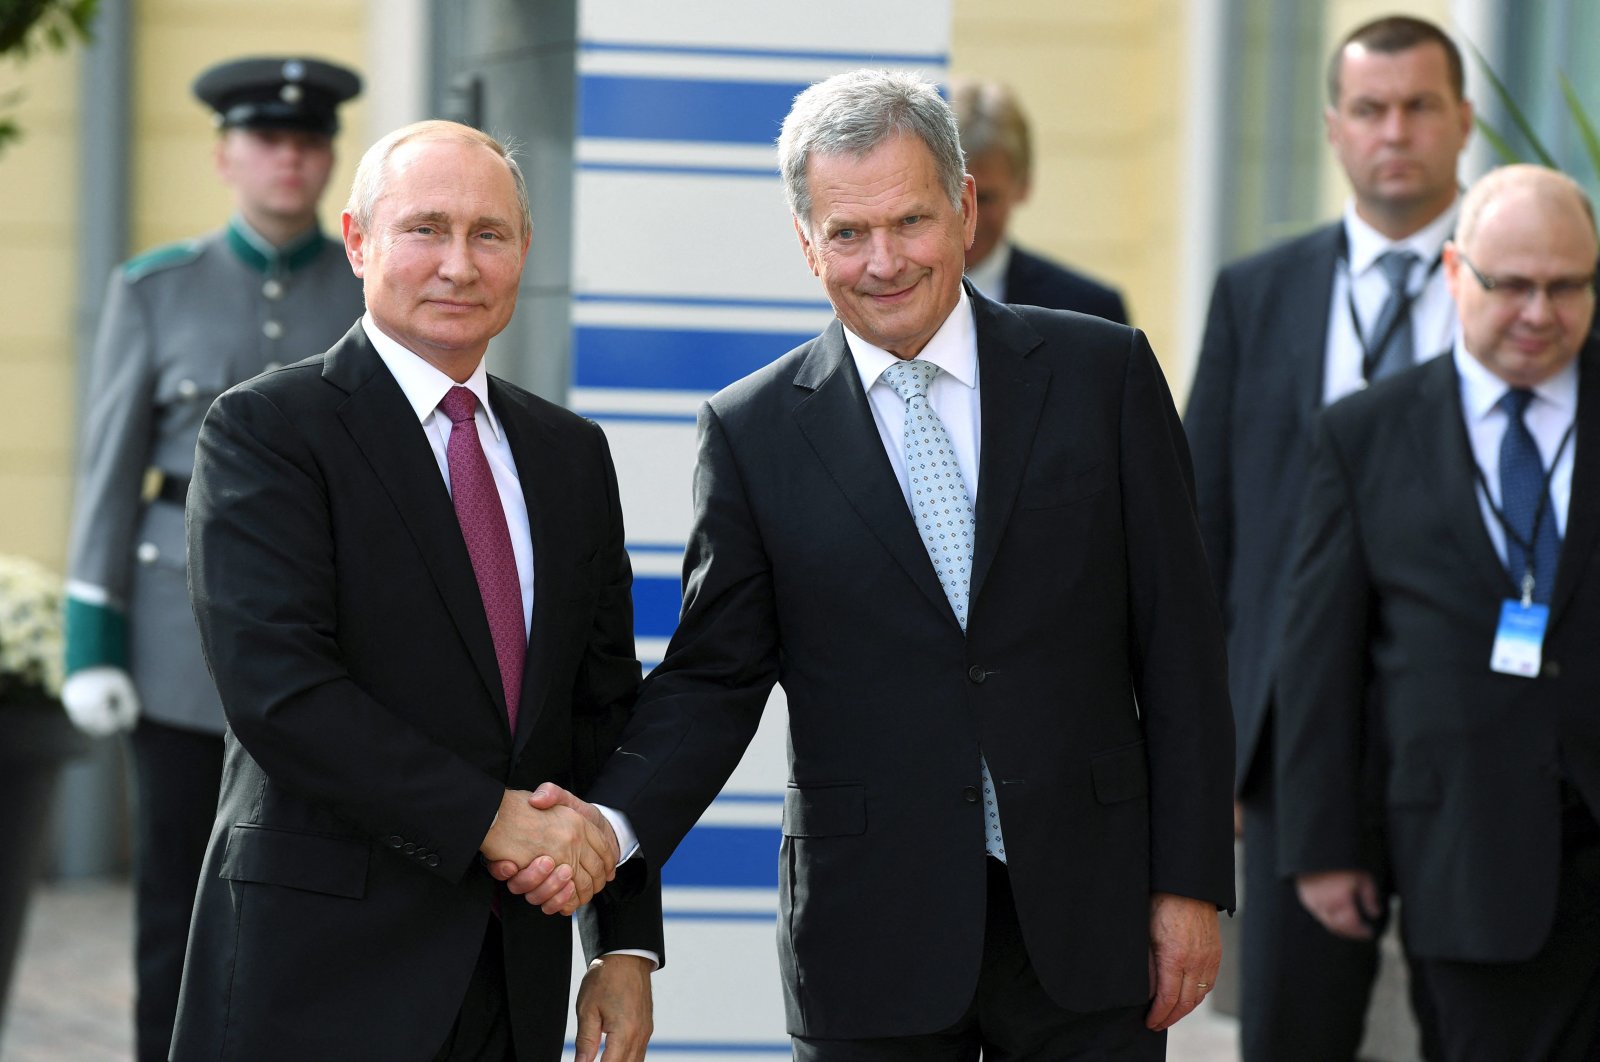 Finlandia akan melamar keanggotaan NATO, Niinisto memberi tahu Putin yang gelisah